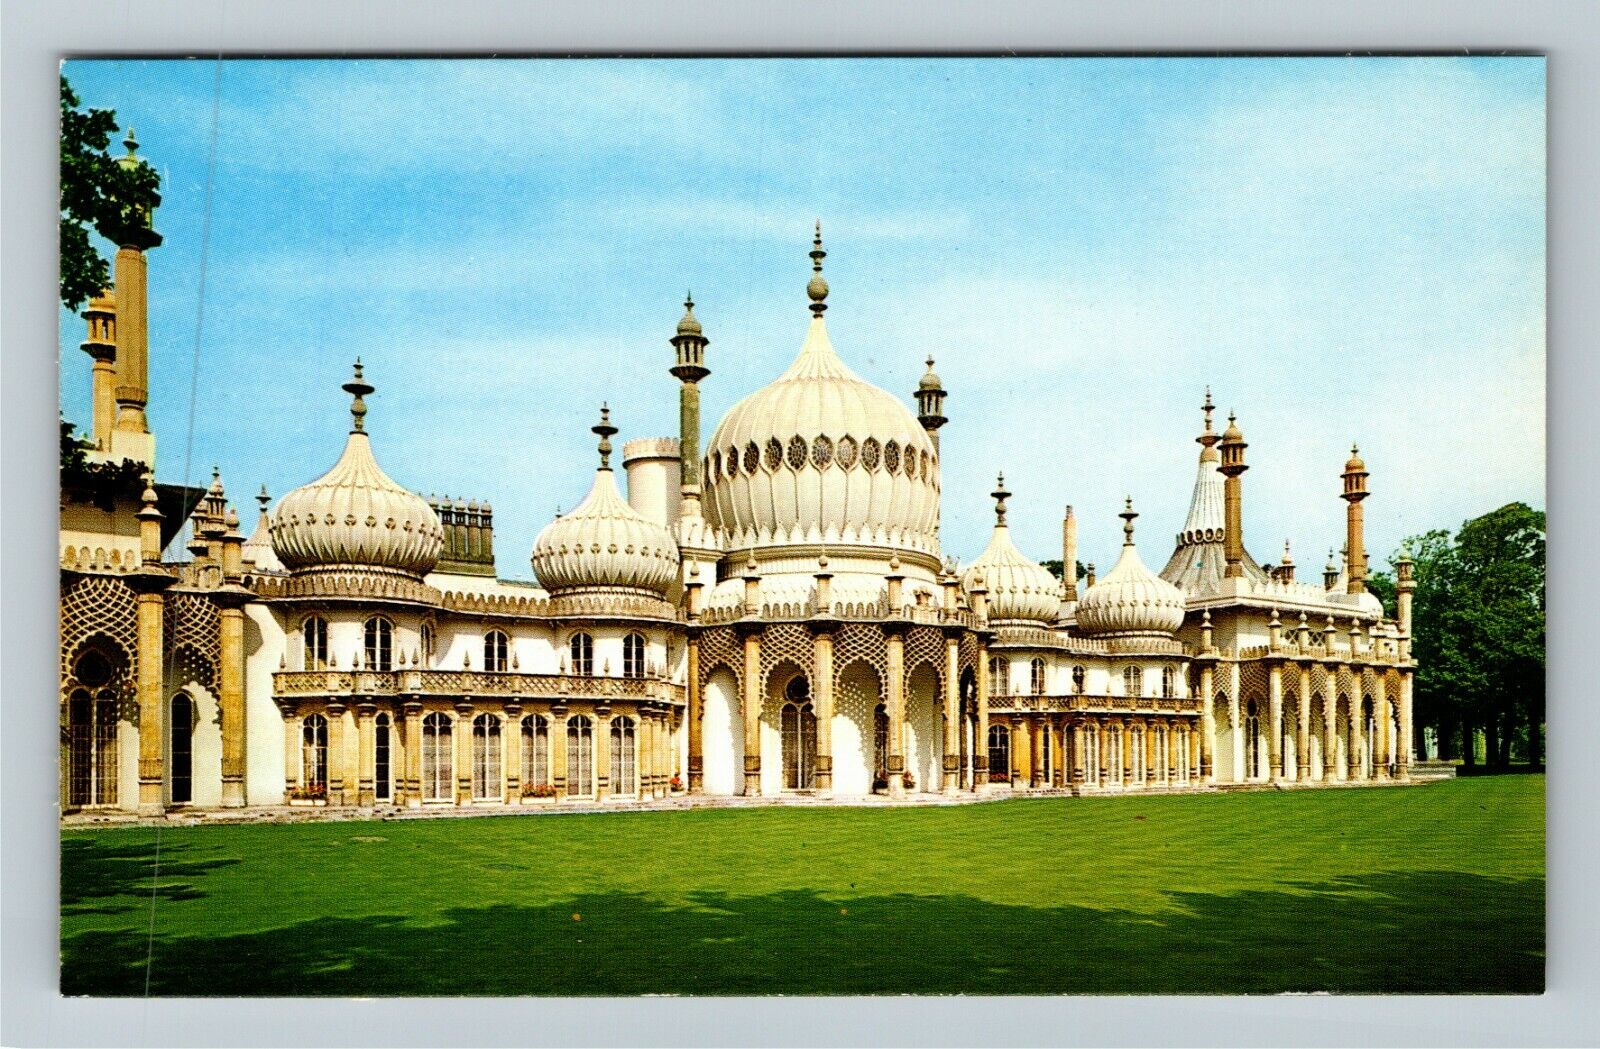 Brighton UK-United Kingdom Royal Pavilion Unique Architecture Vintage Postcard